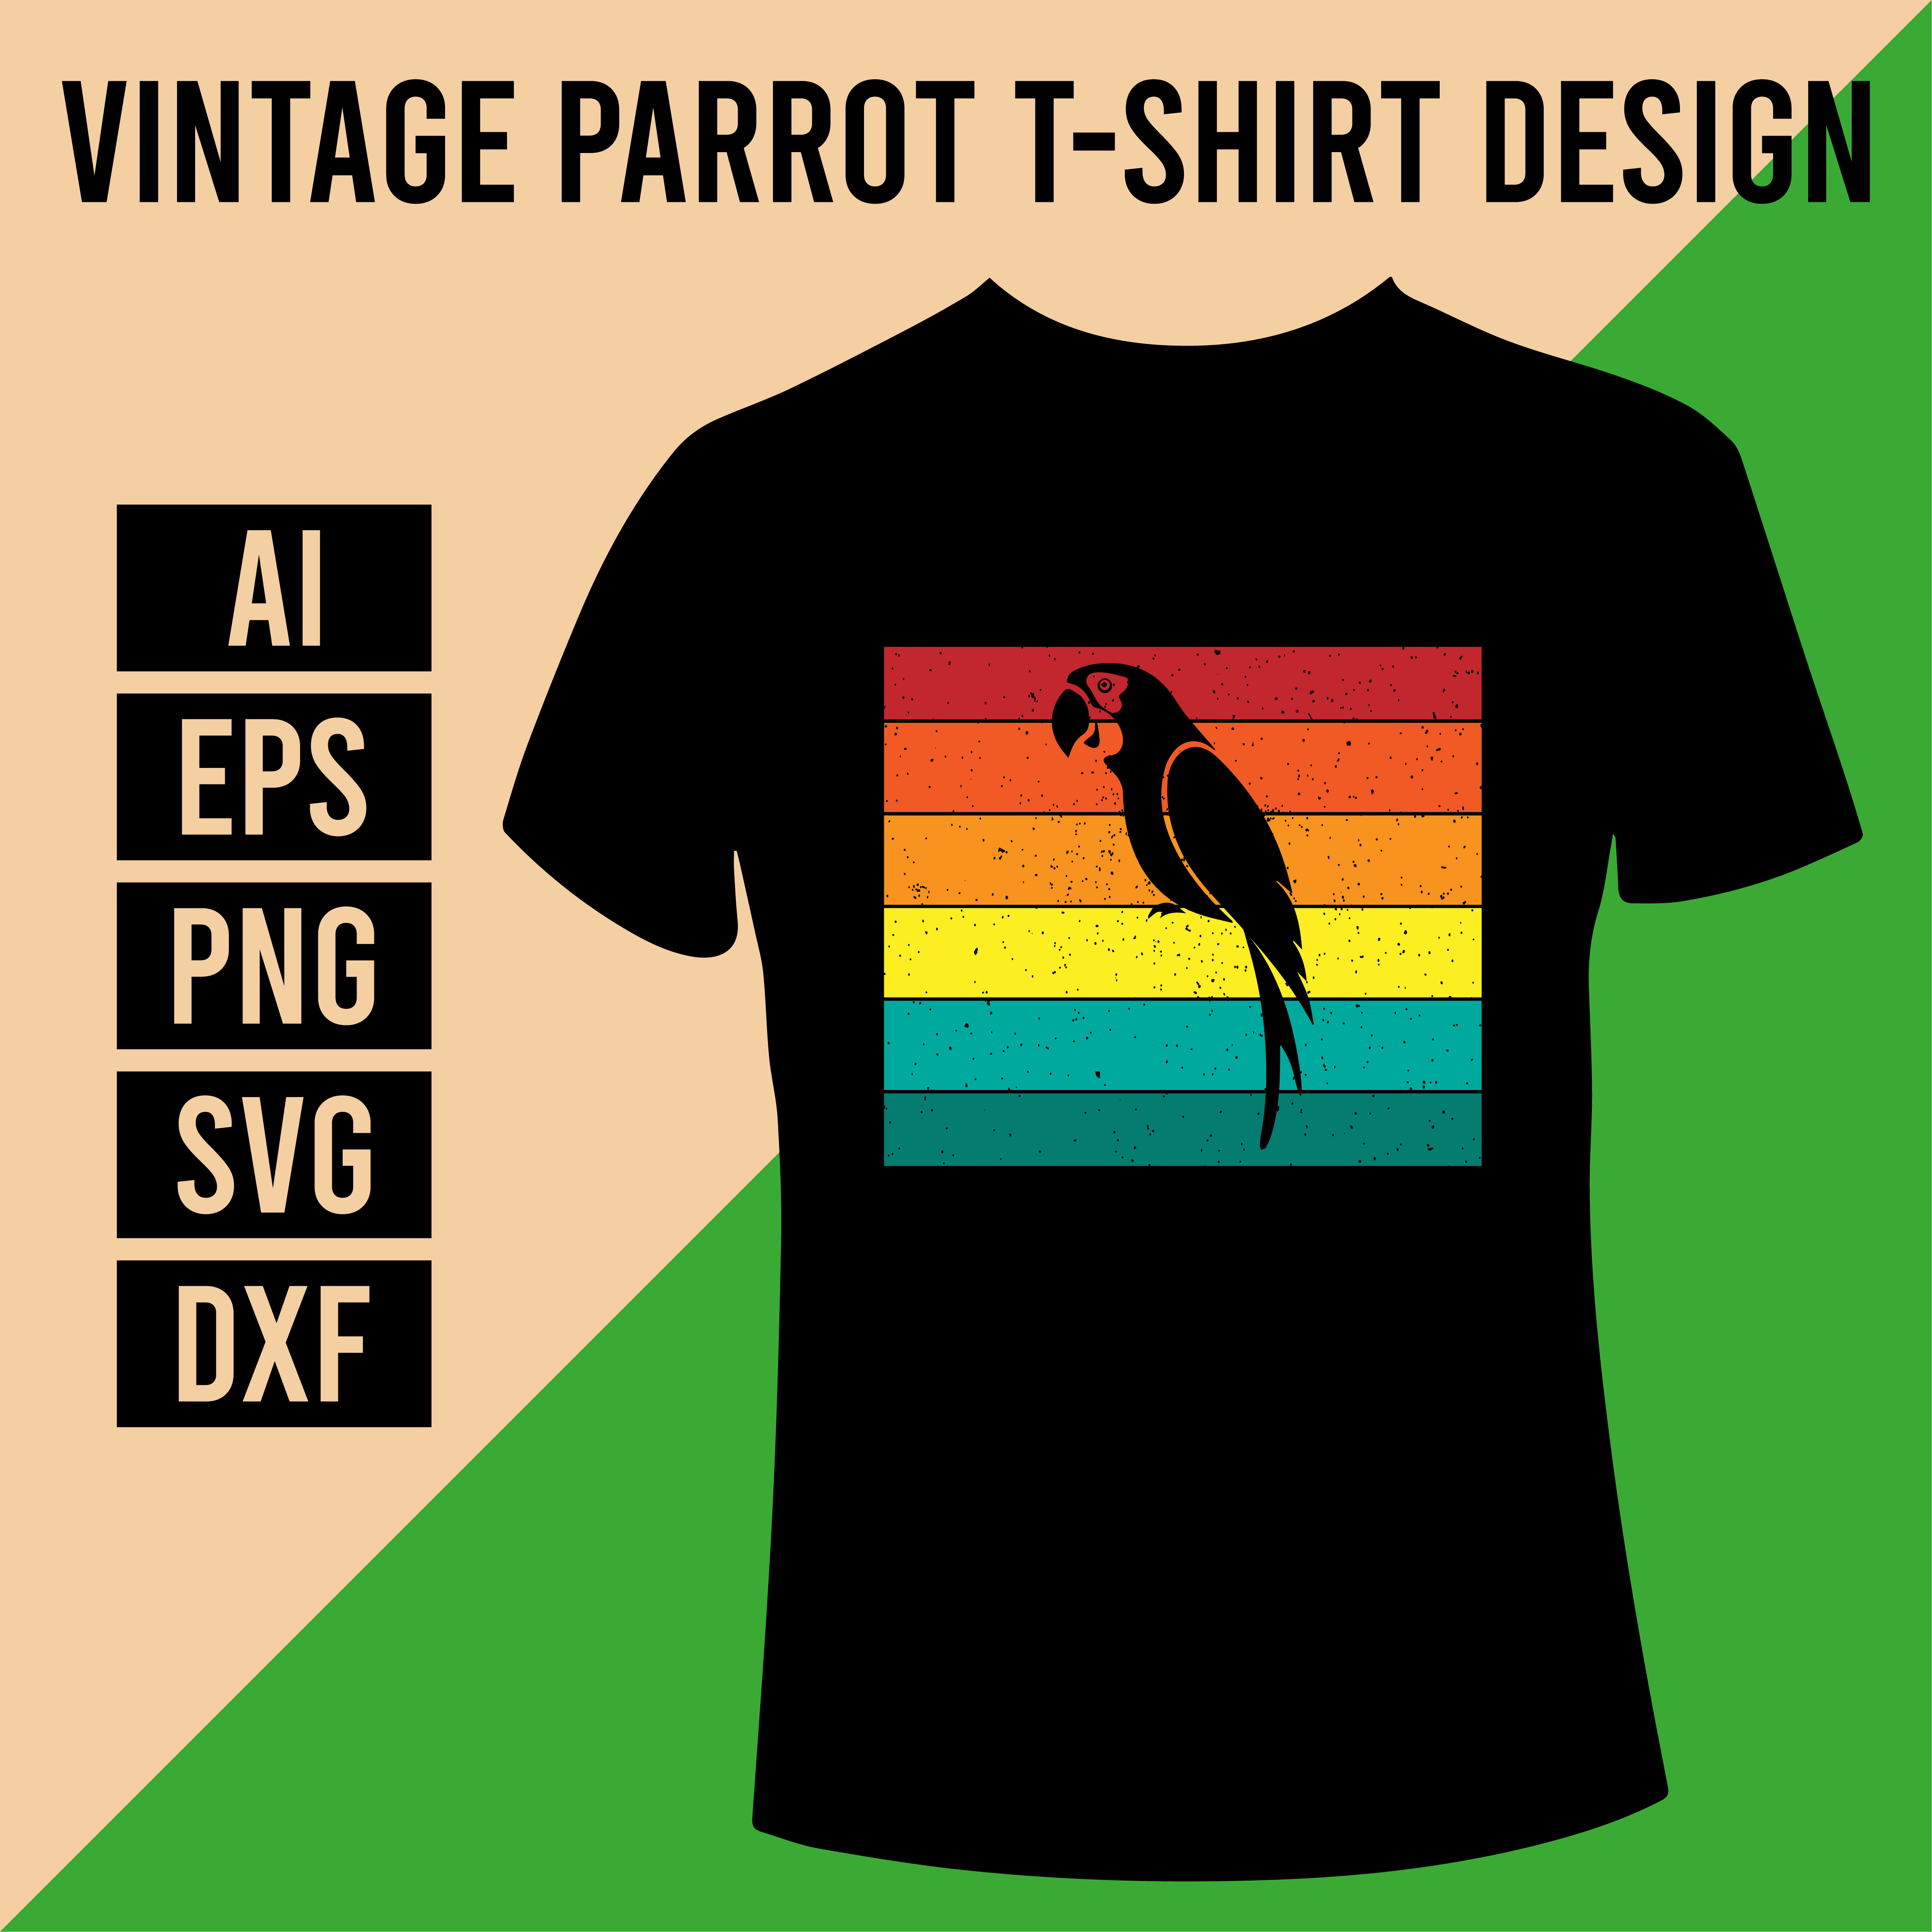 Vintage I Like Birds T Shirt Design cover image.